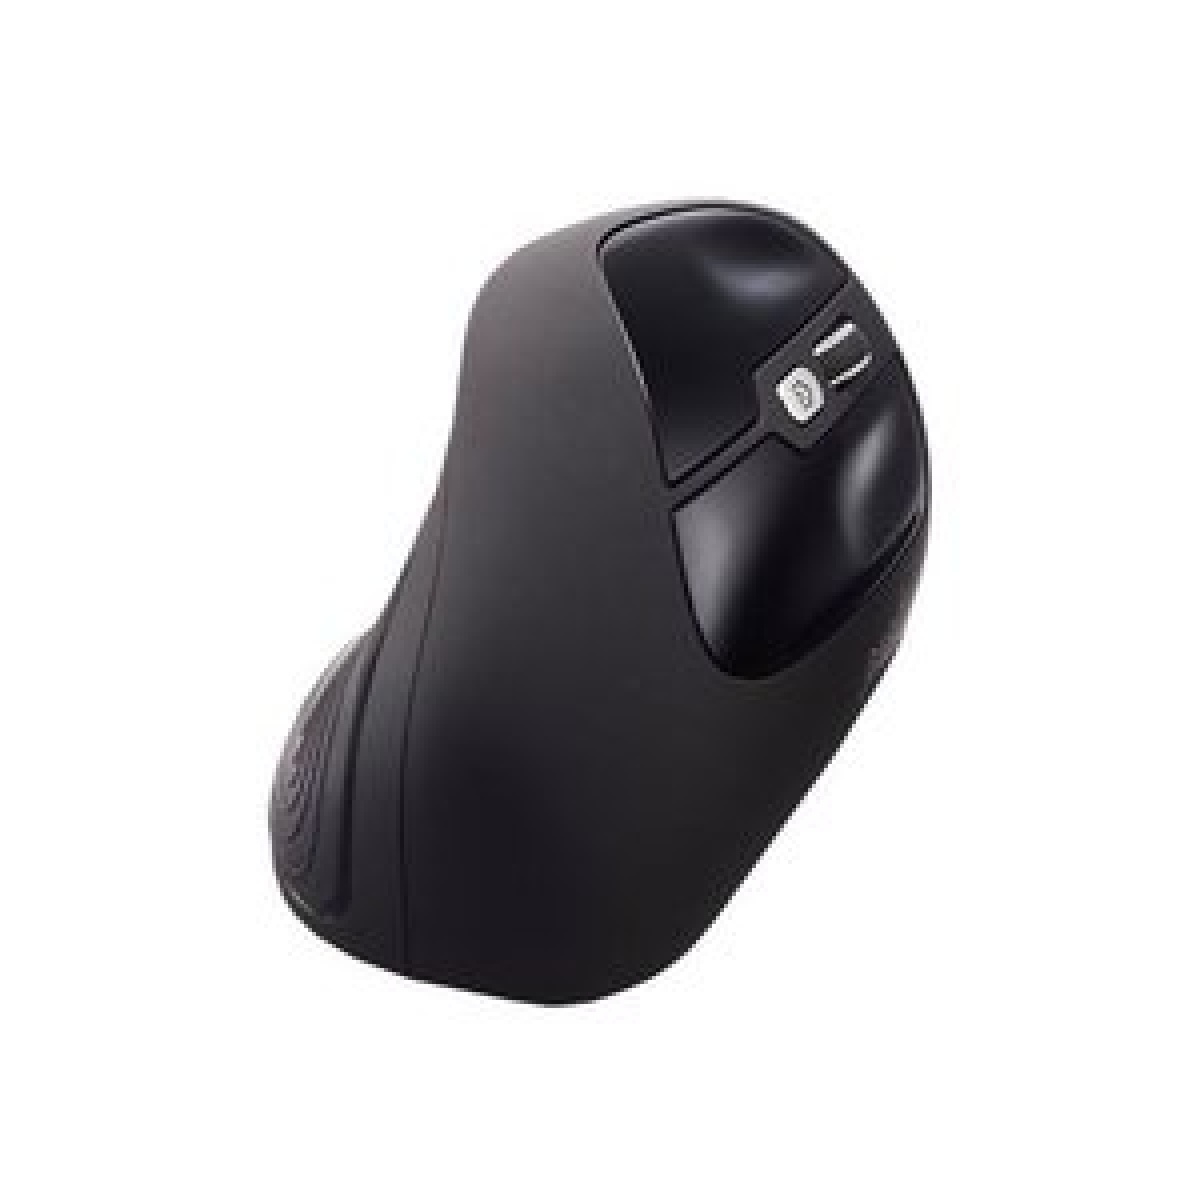 Mouse USB PERIMICE-515 Ergo